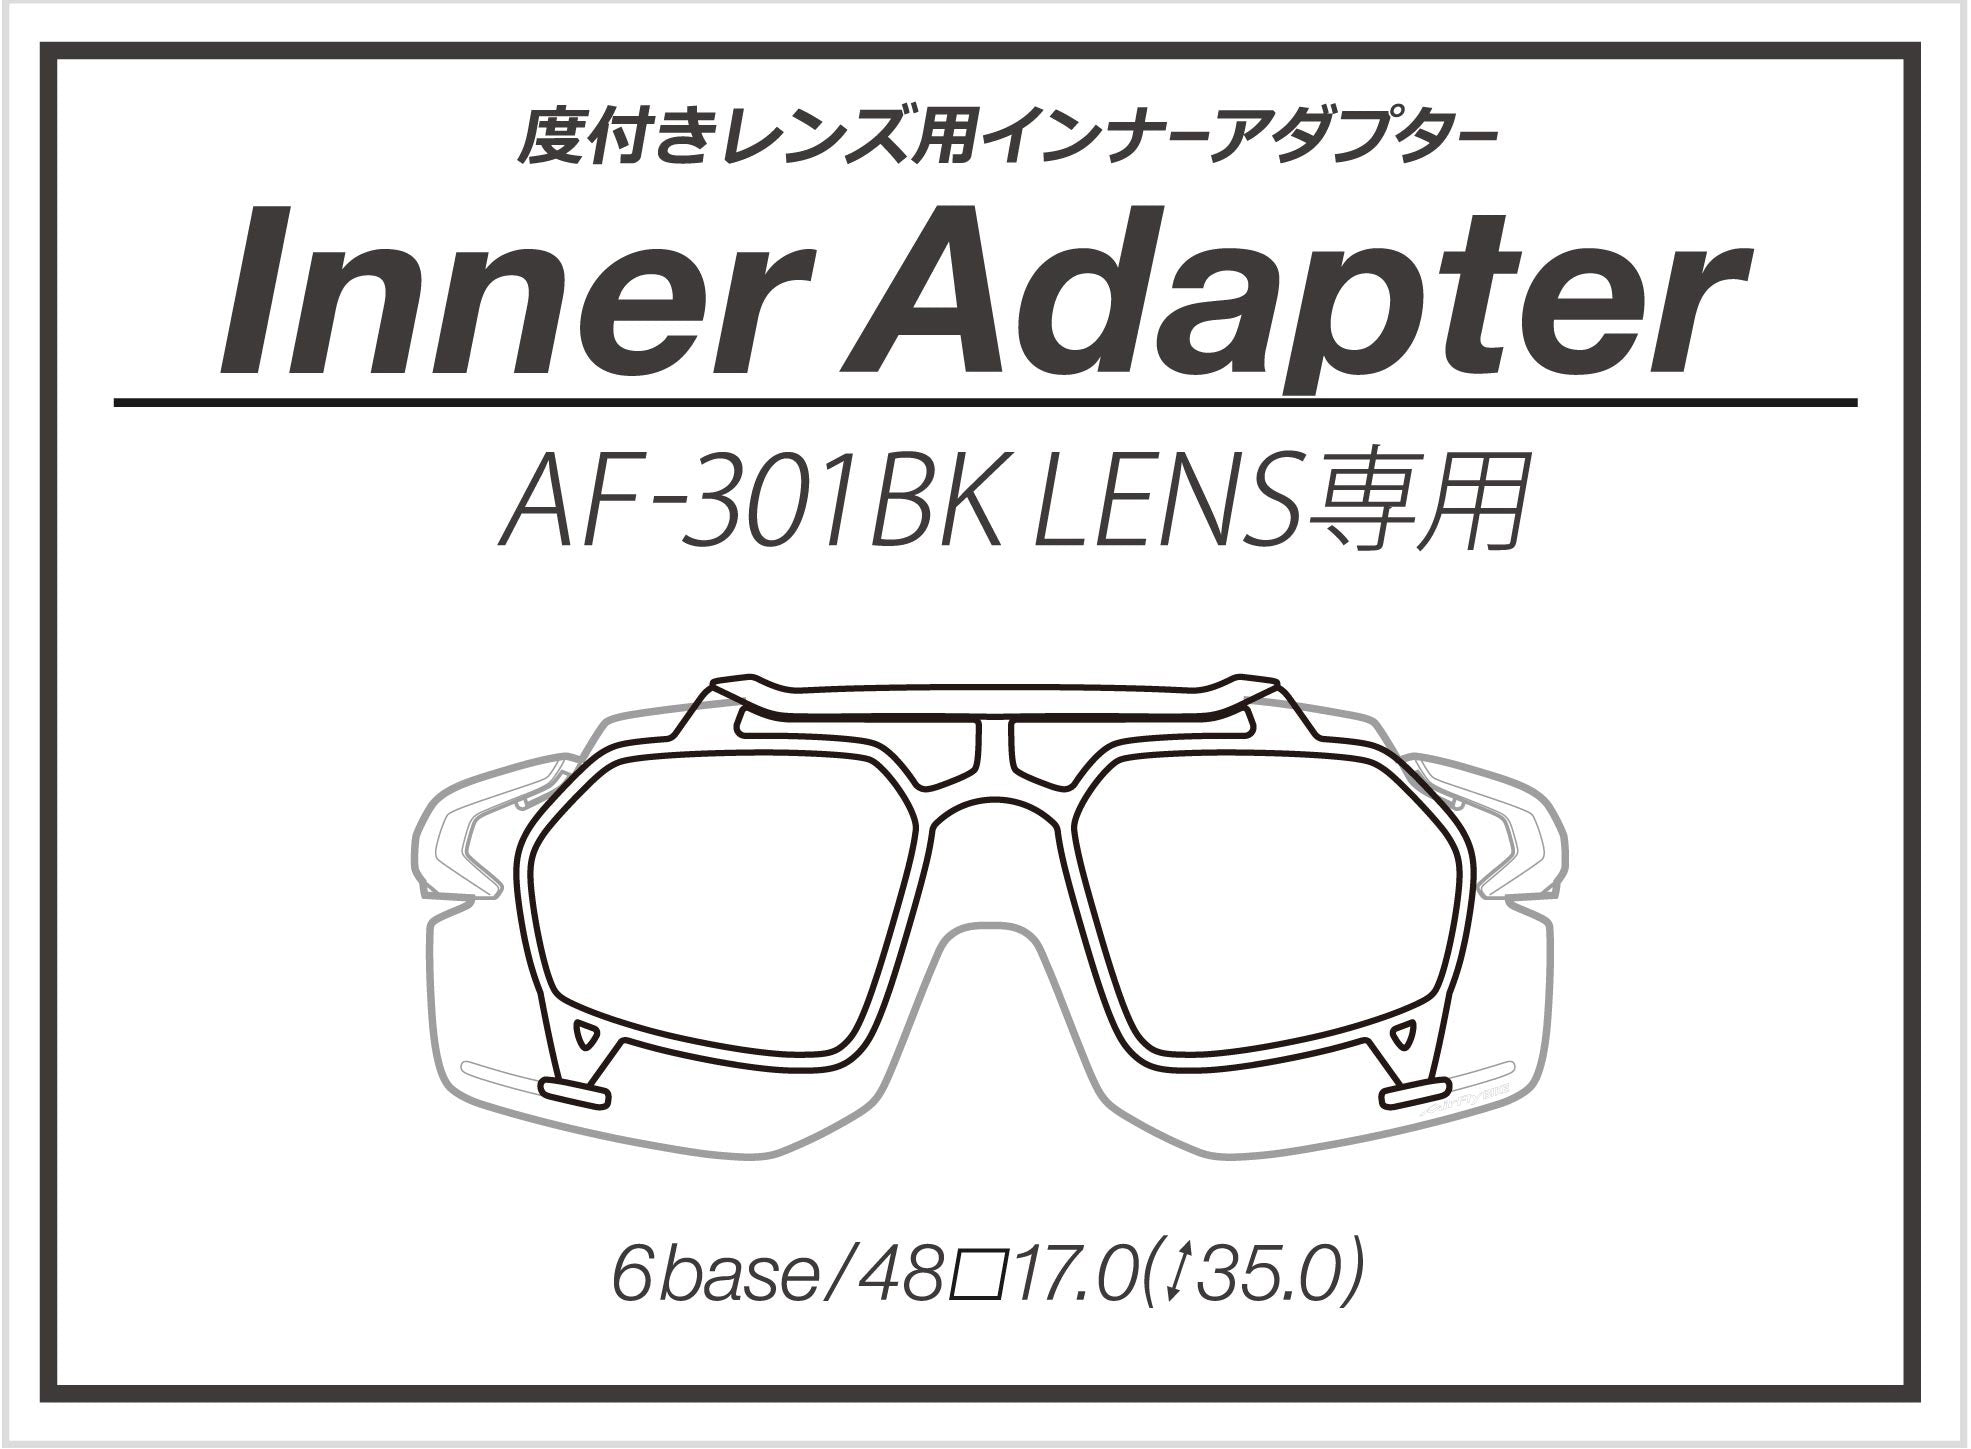 AirFly - AF301 Bike Inner Adapter Clear Lens(Demo Lens) (只適用AF301BK)【New】